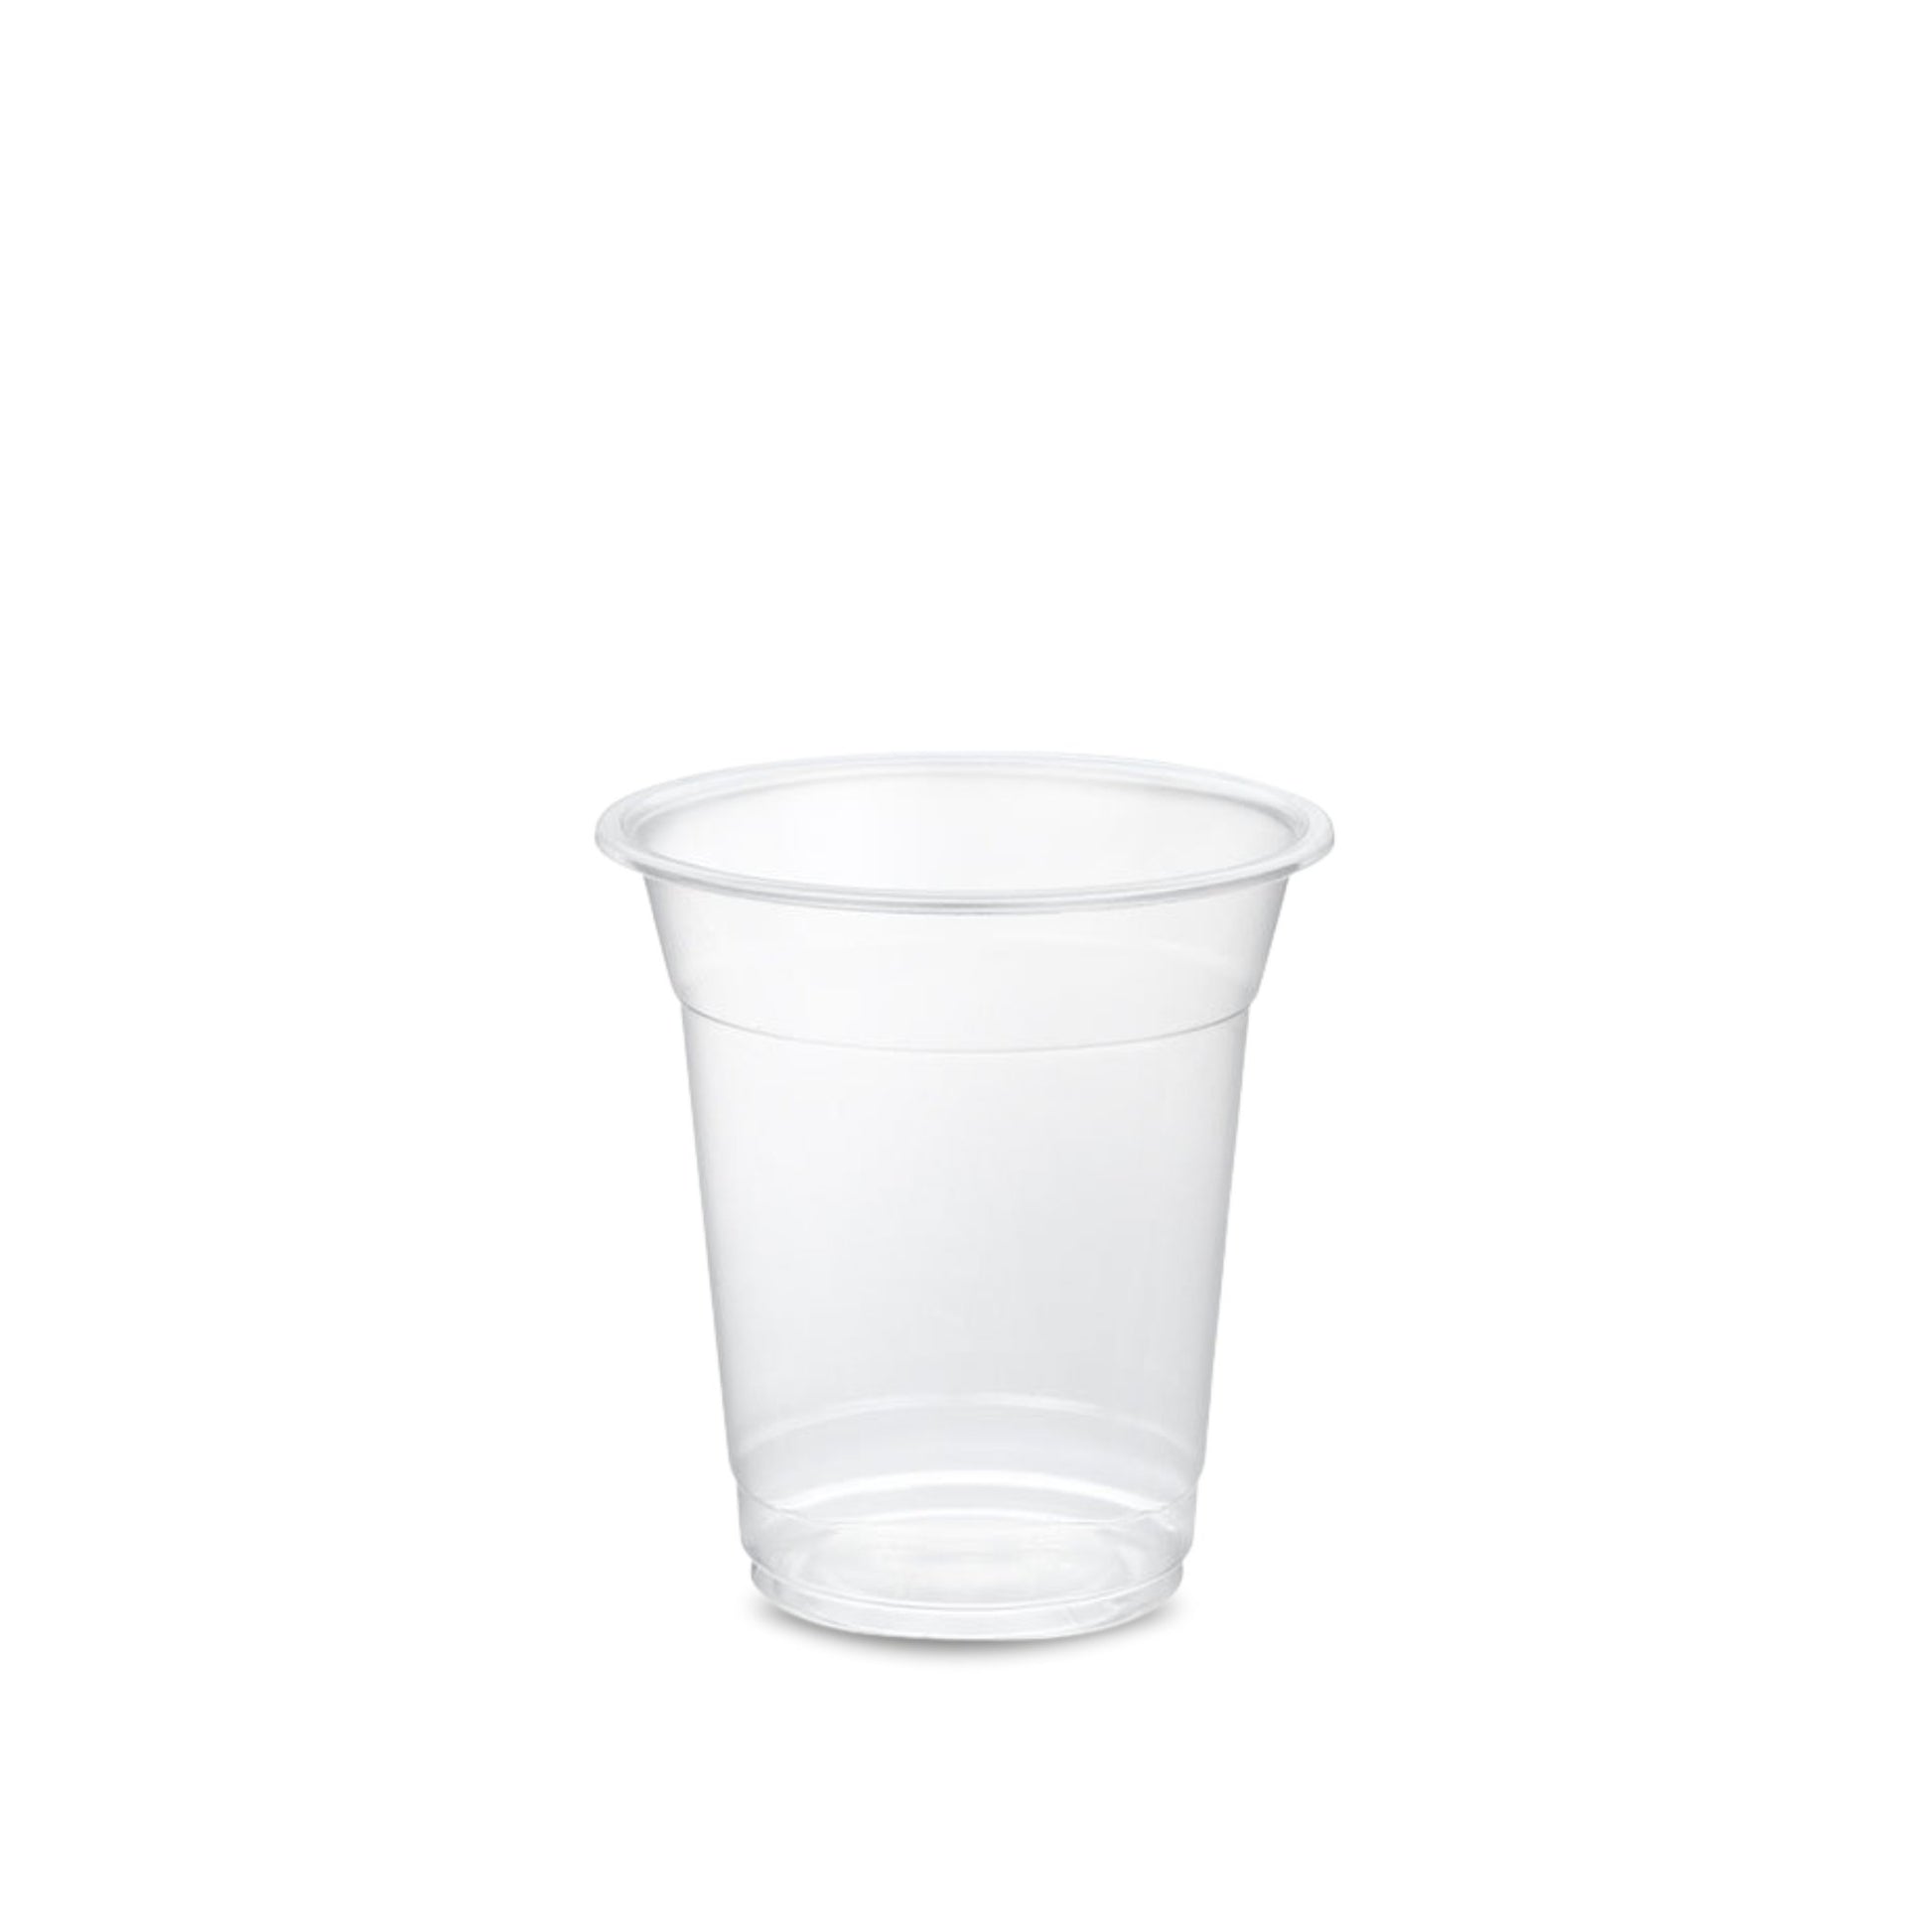 Kreme City Disposable PP Plastic Plain Cups 95mm 50pcs - Kreme City Supplies